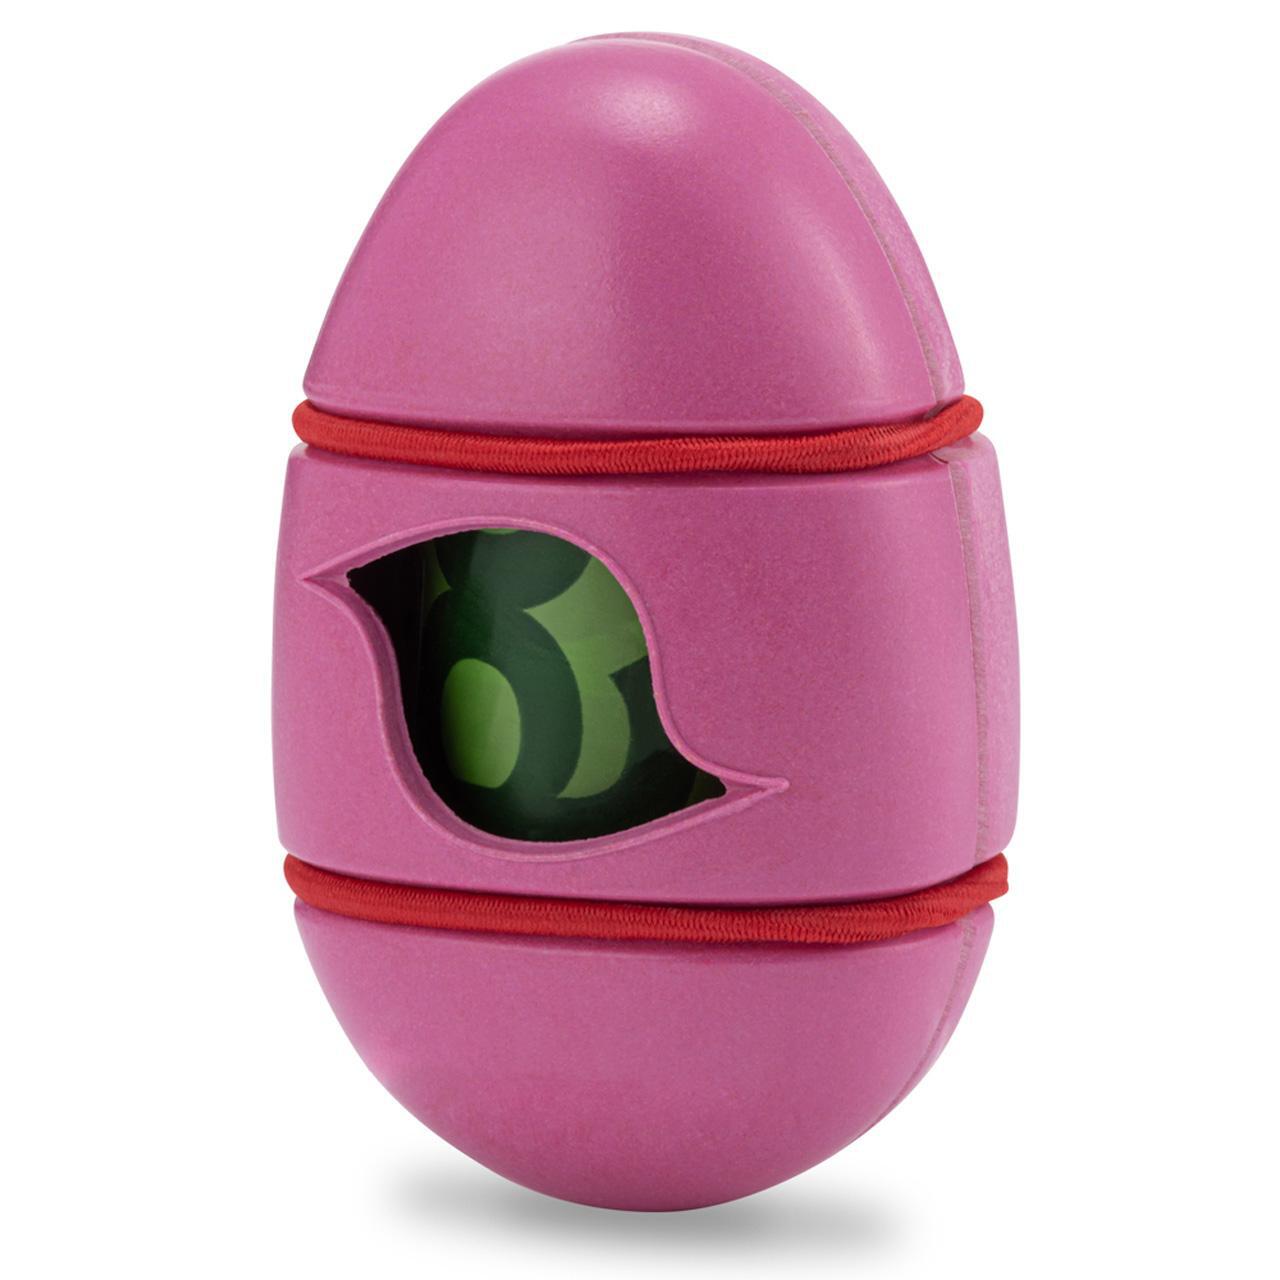 Beco Pocket Poop Bag Dispenser - Pink